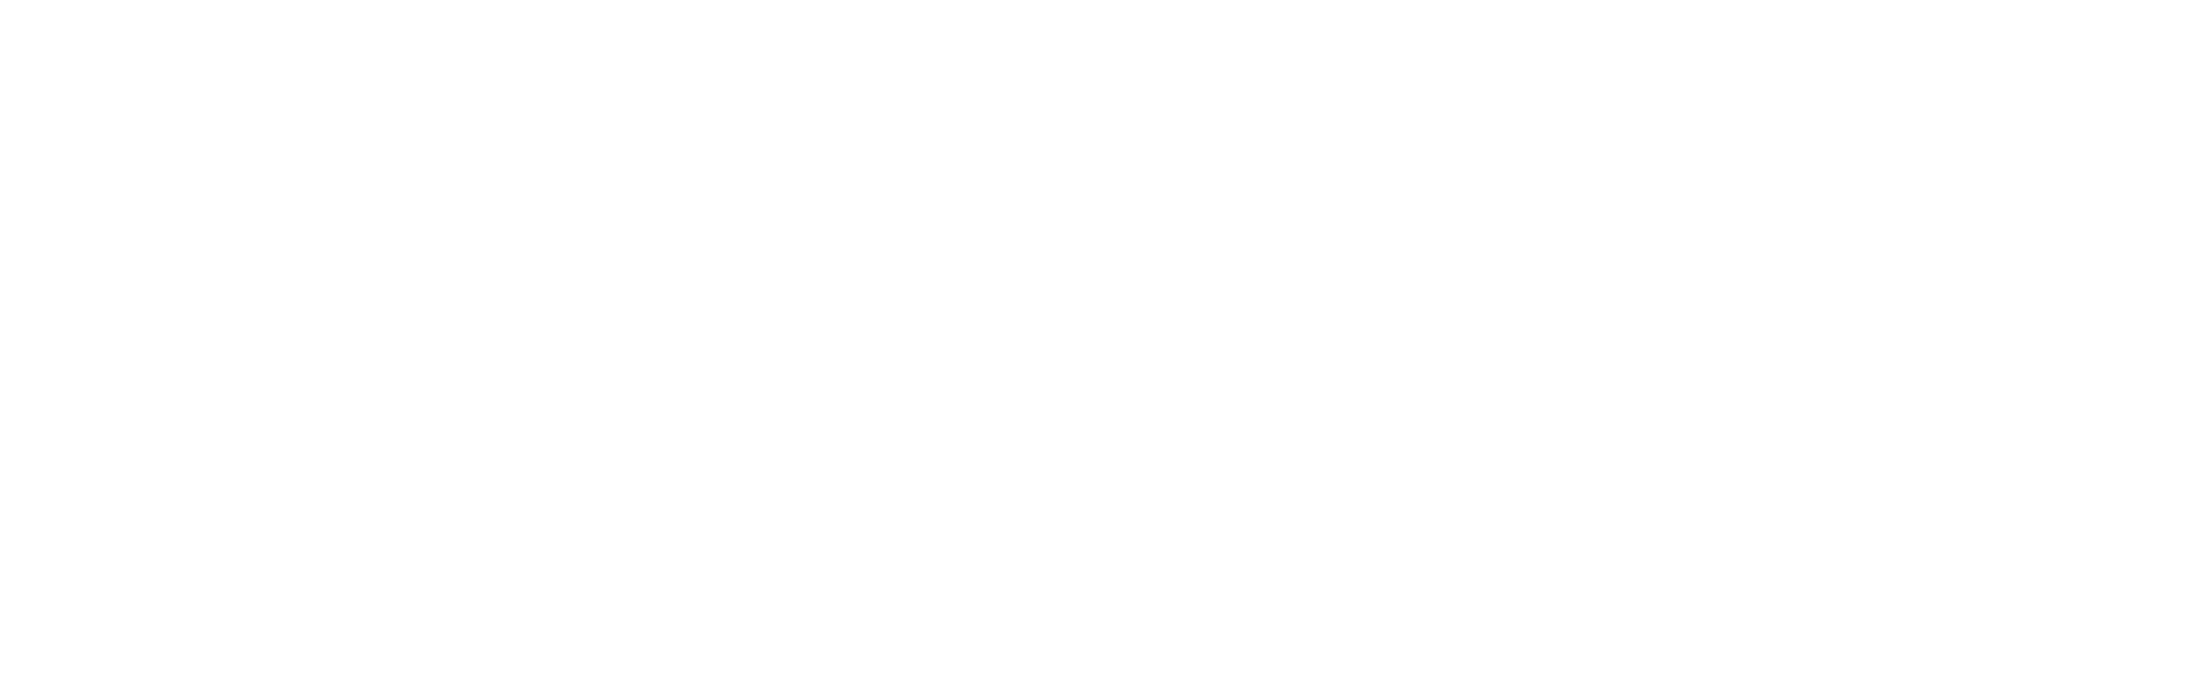 Logo ELECTROSON_Telecomunicações_BRASIL